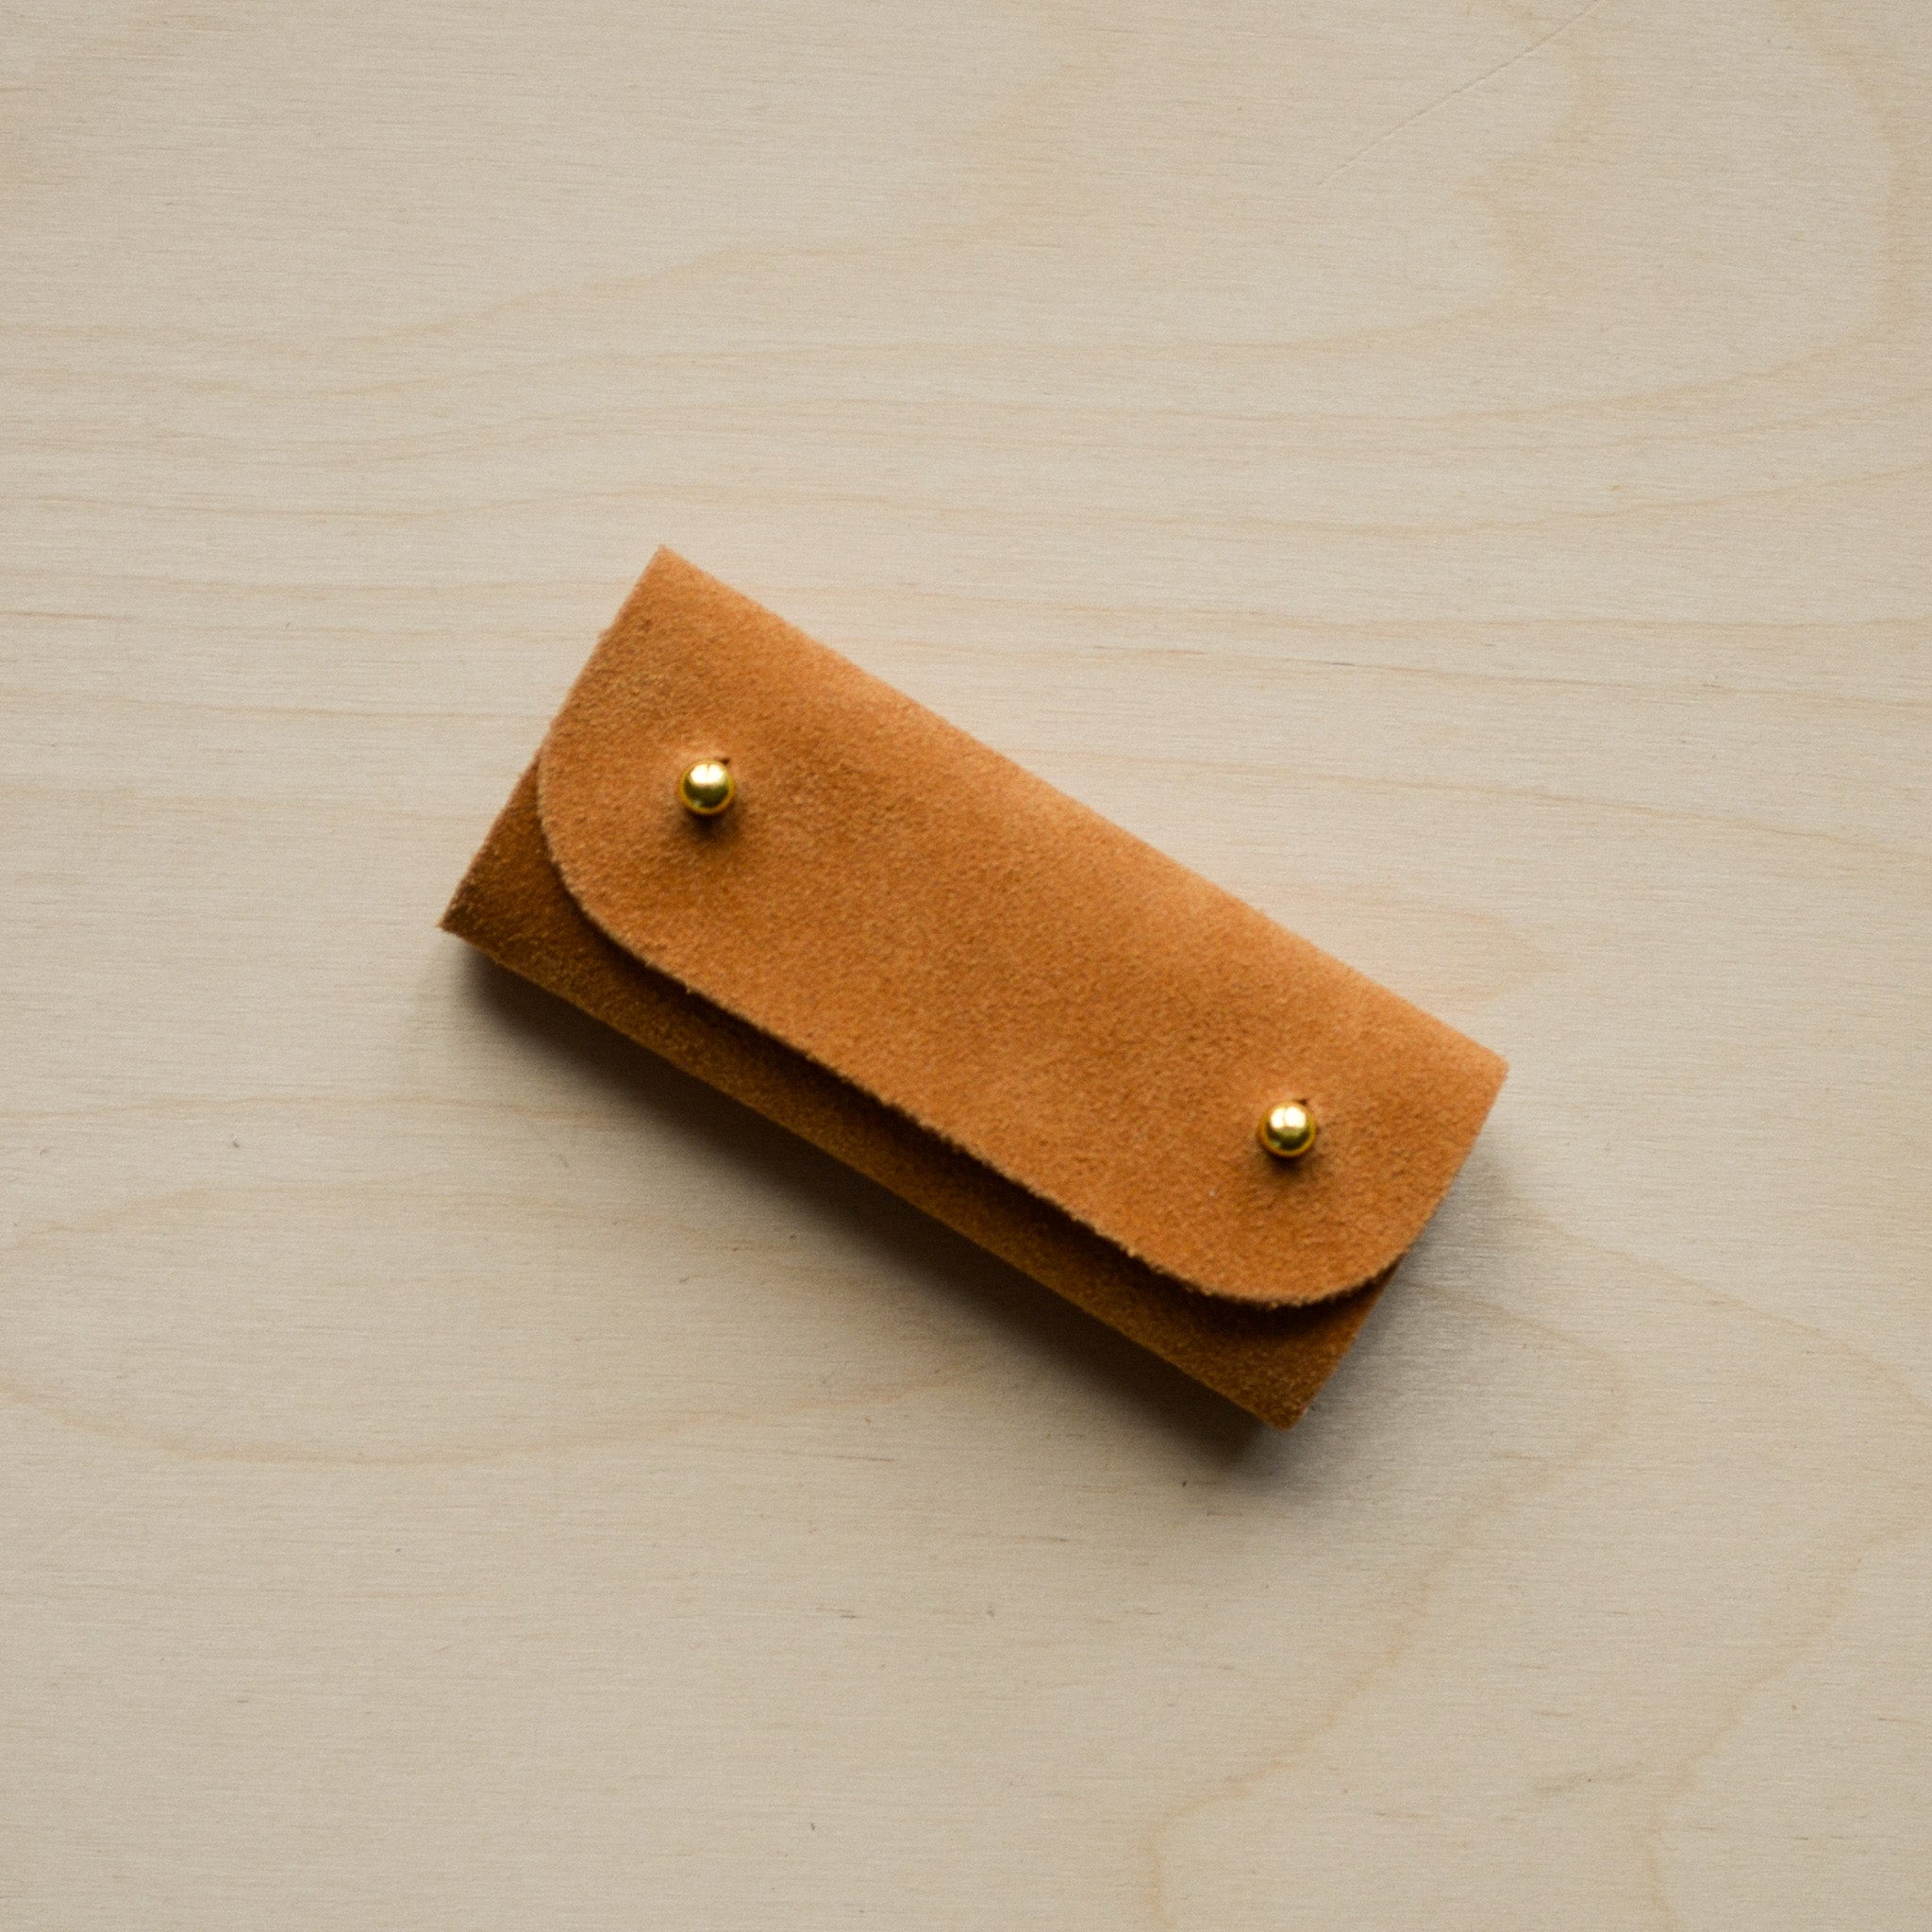 Tan brown mini sewing needle case.